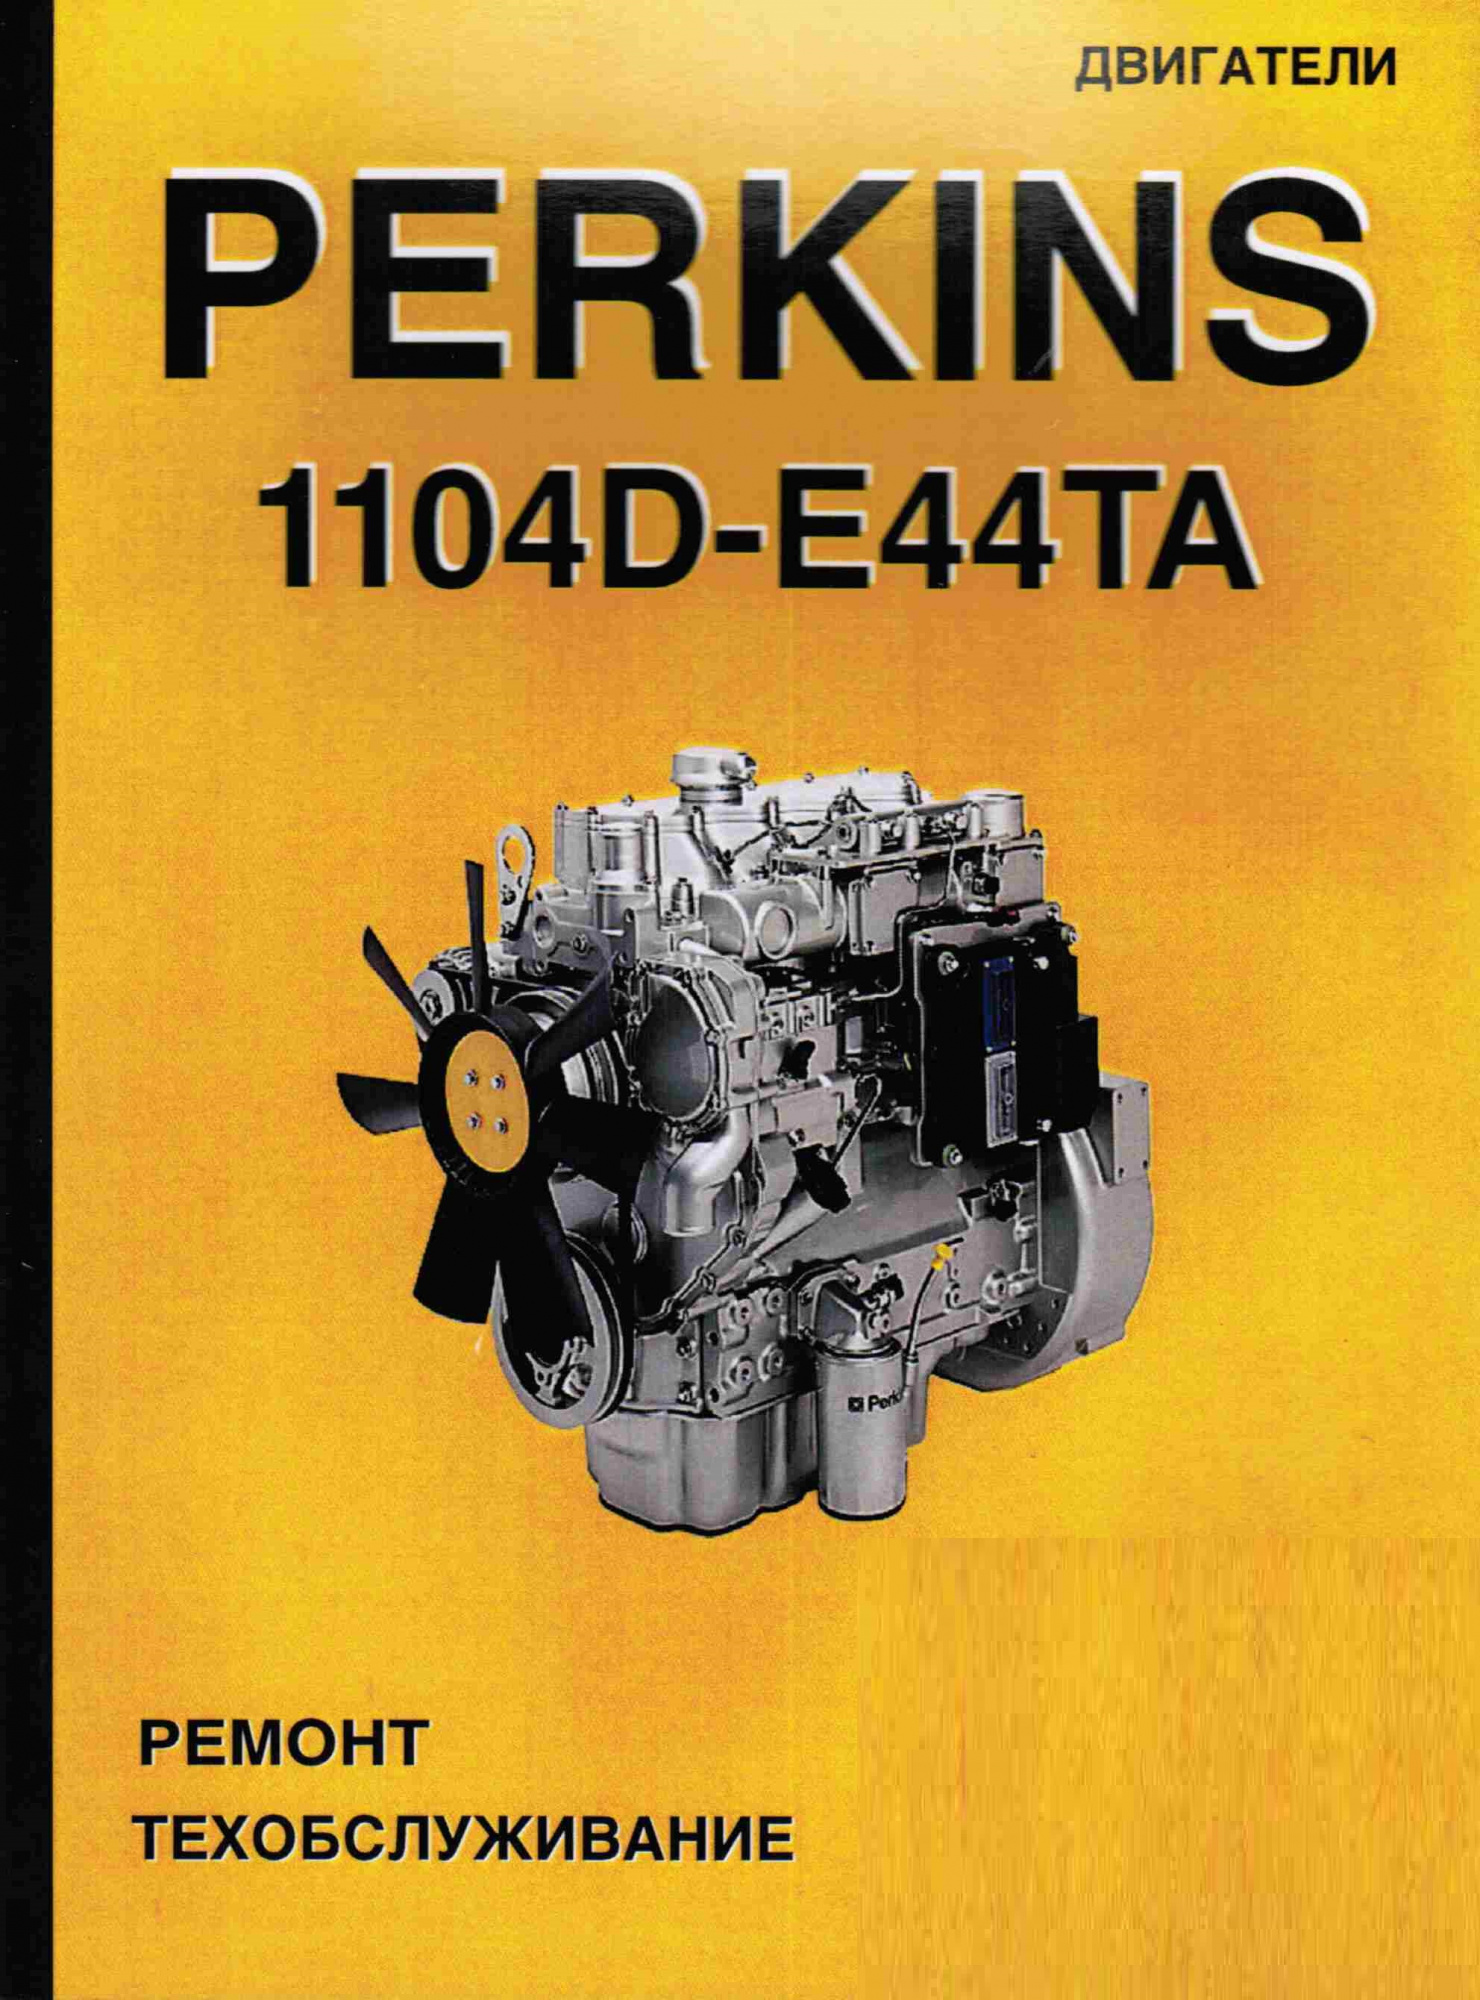 Perkins двигатели 1104D-E44TA. Книга руководство по ремонту. Терция